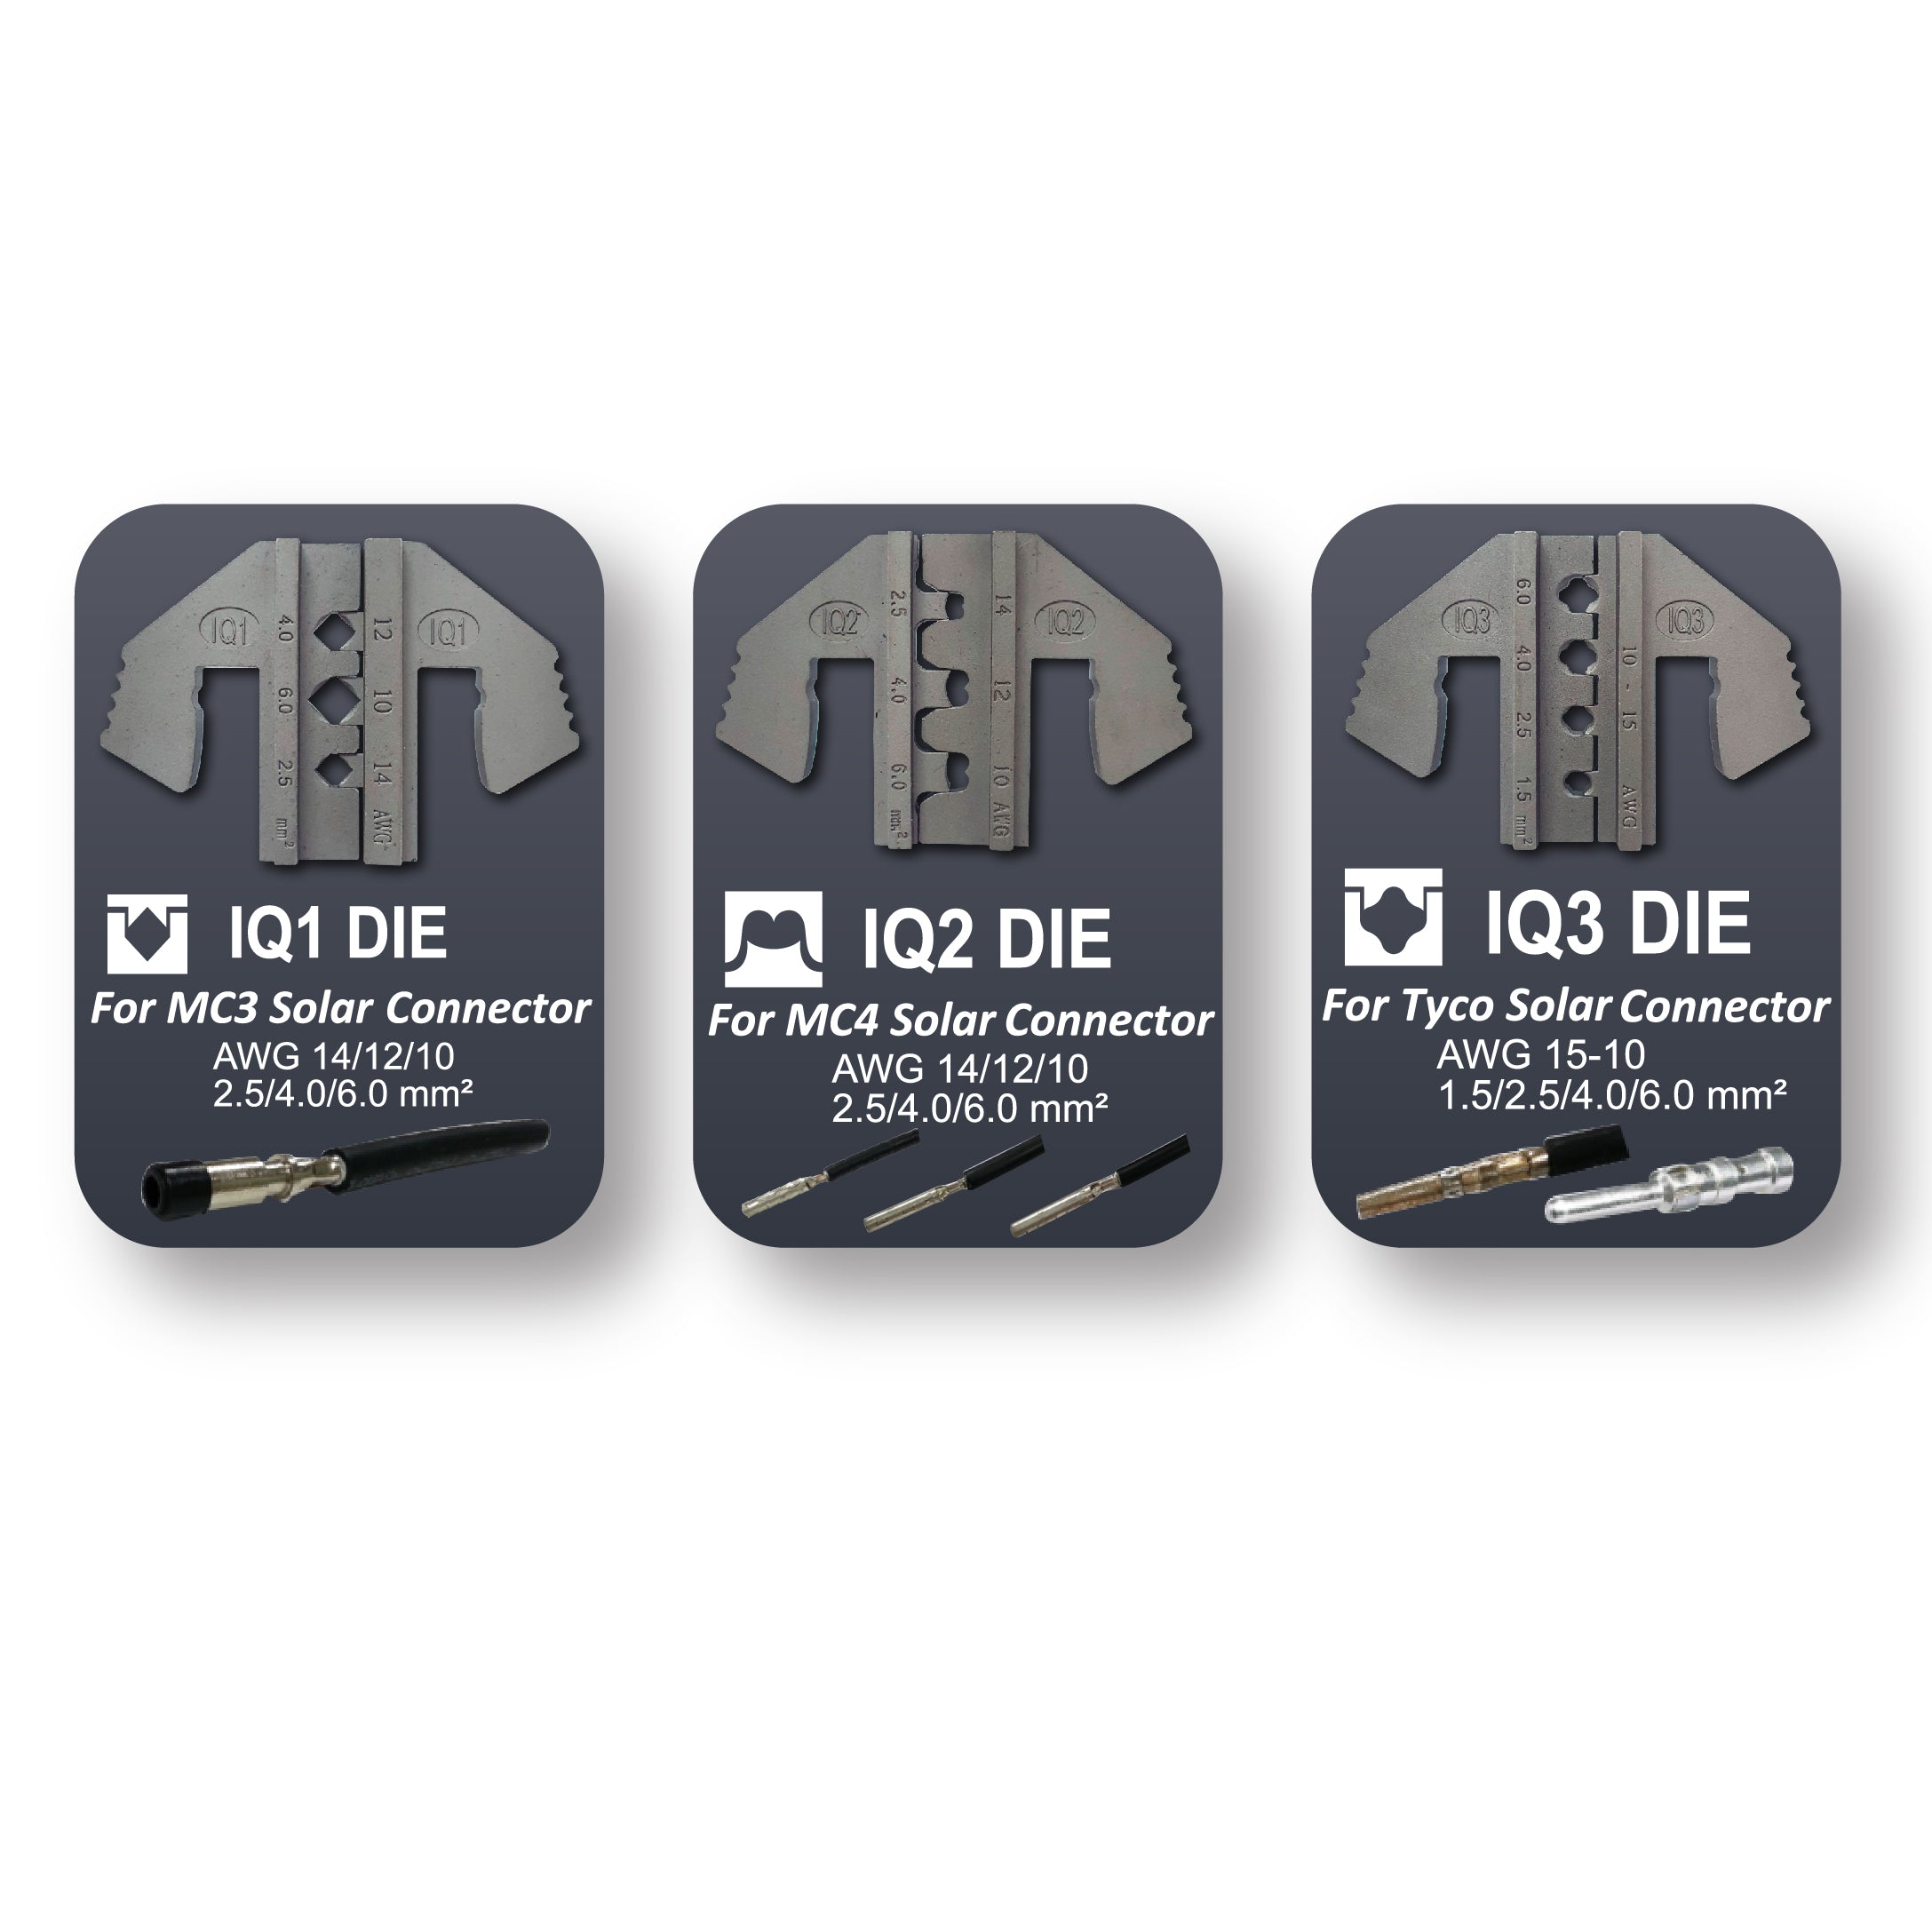 Crimping Tool Die Set - IQ1, IQ2, IQ3 Dies for MC3, MC4, Tyco Solar Connectors